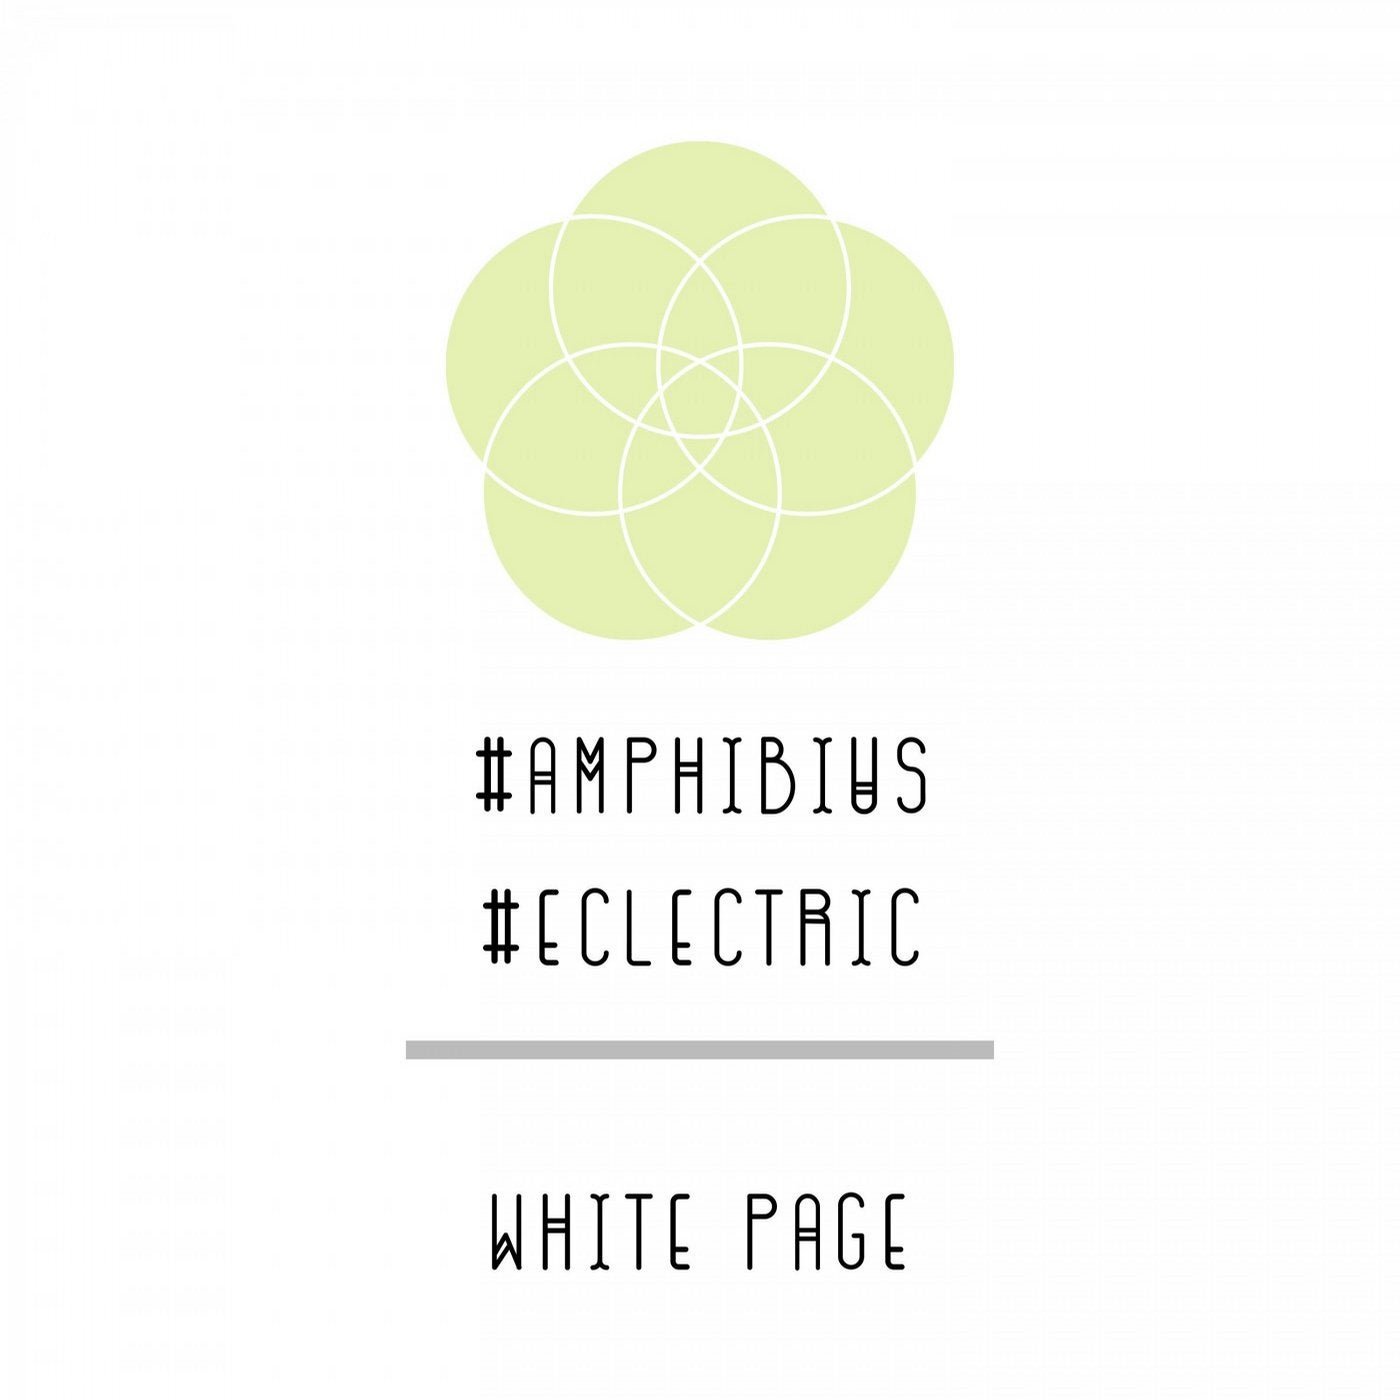 Amphibius-Eclectric